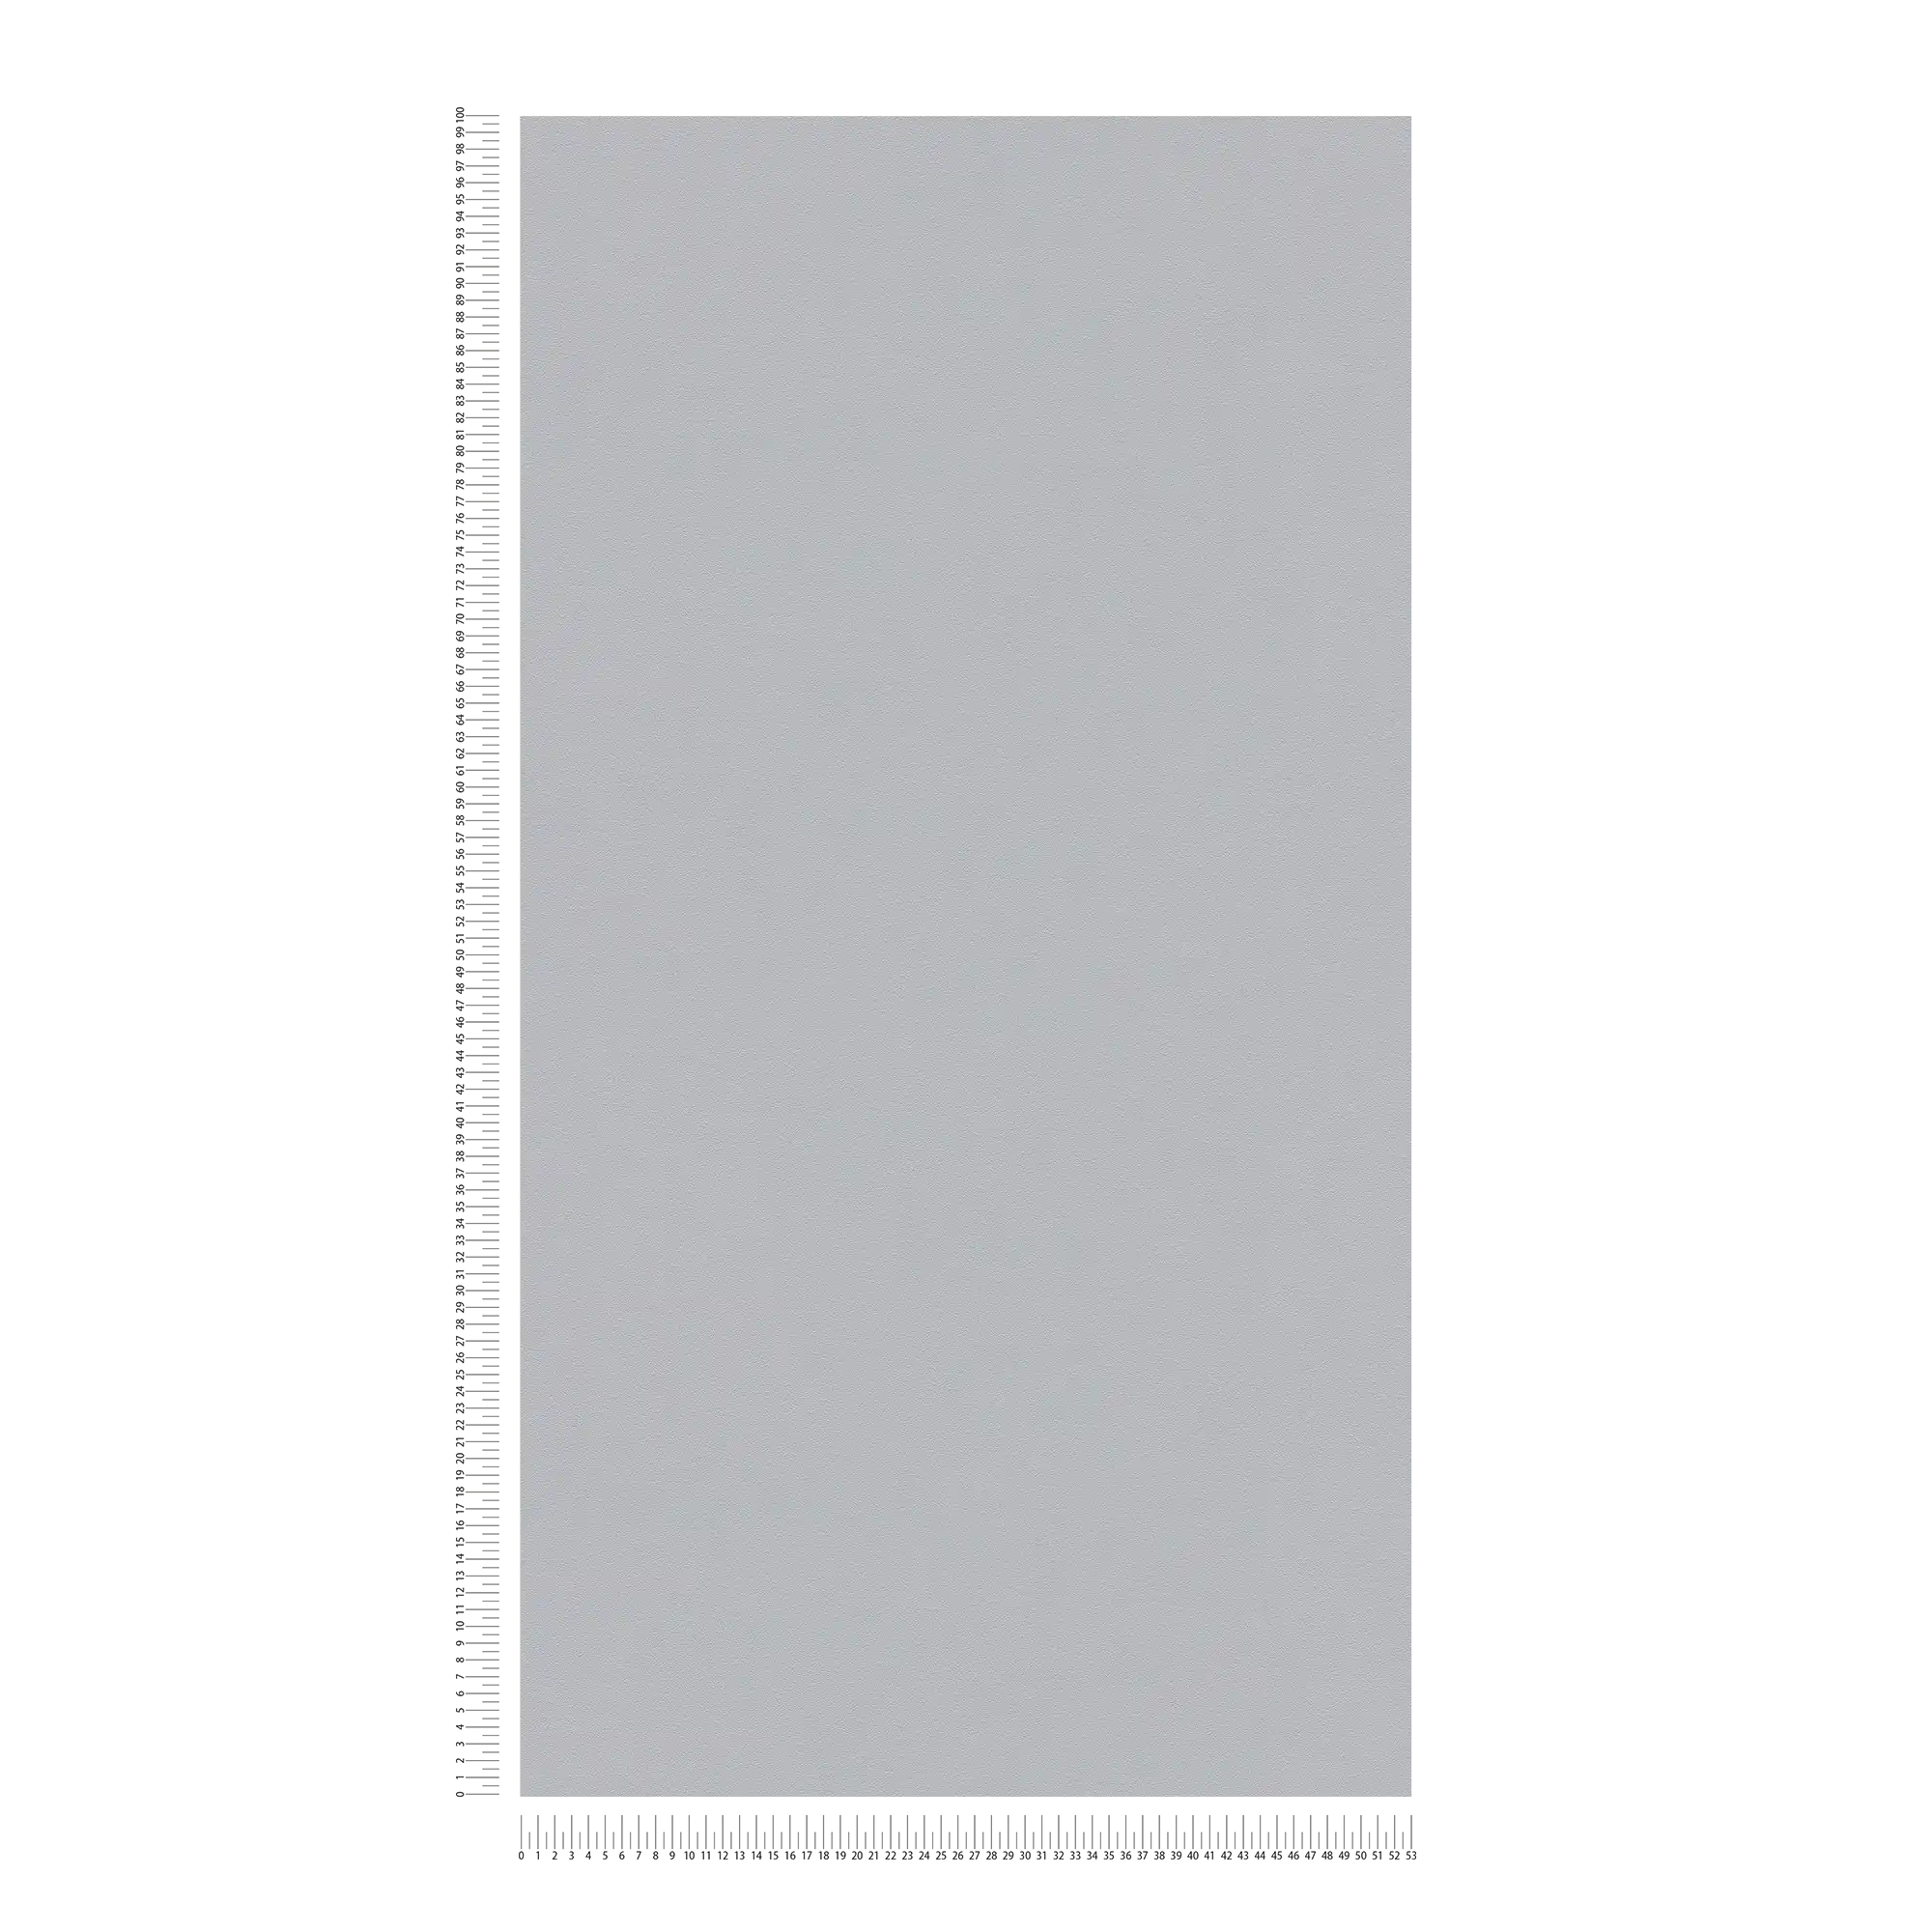             Einfarbige Tapete Grau seidenmatt mit Strukturprägung
        